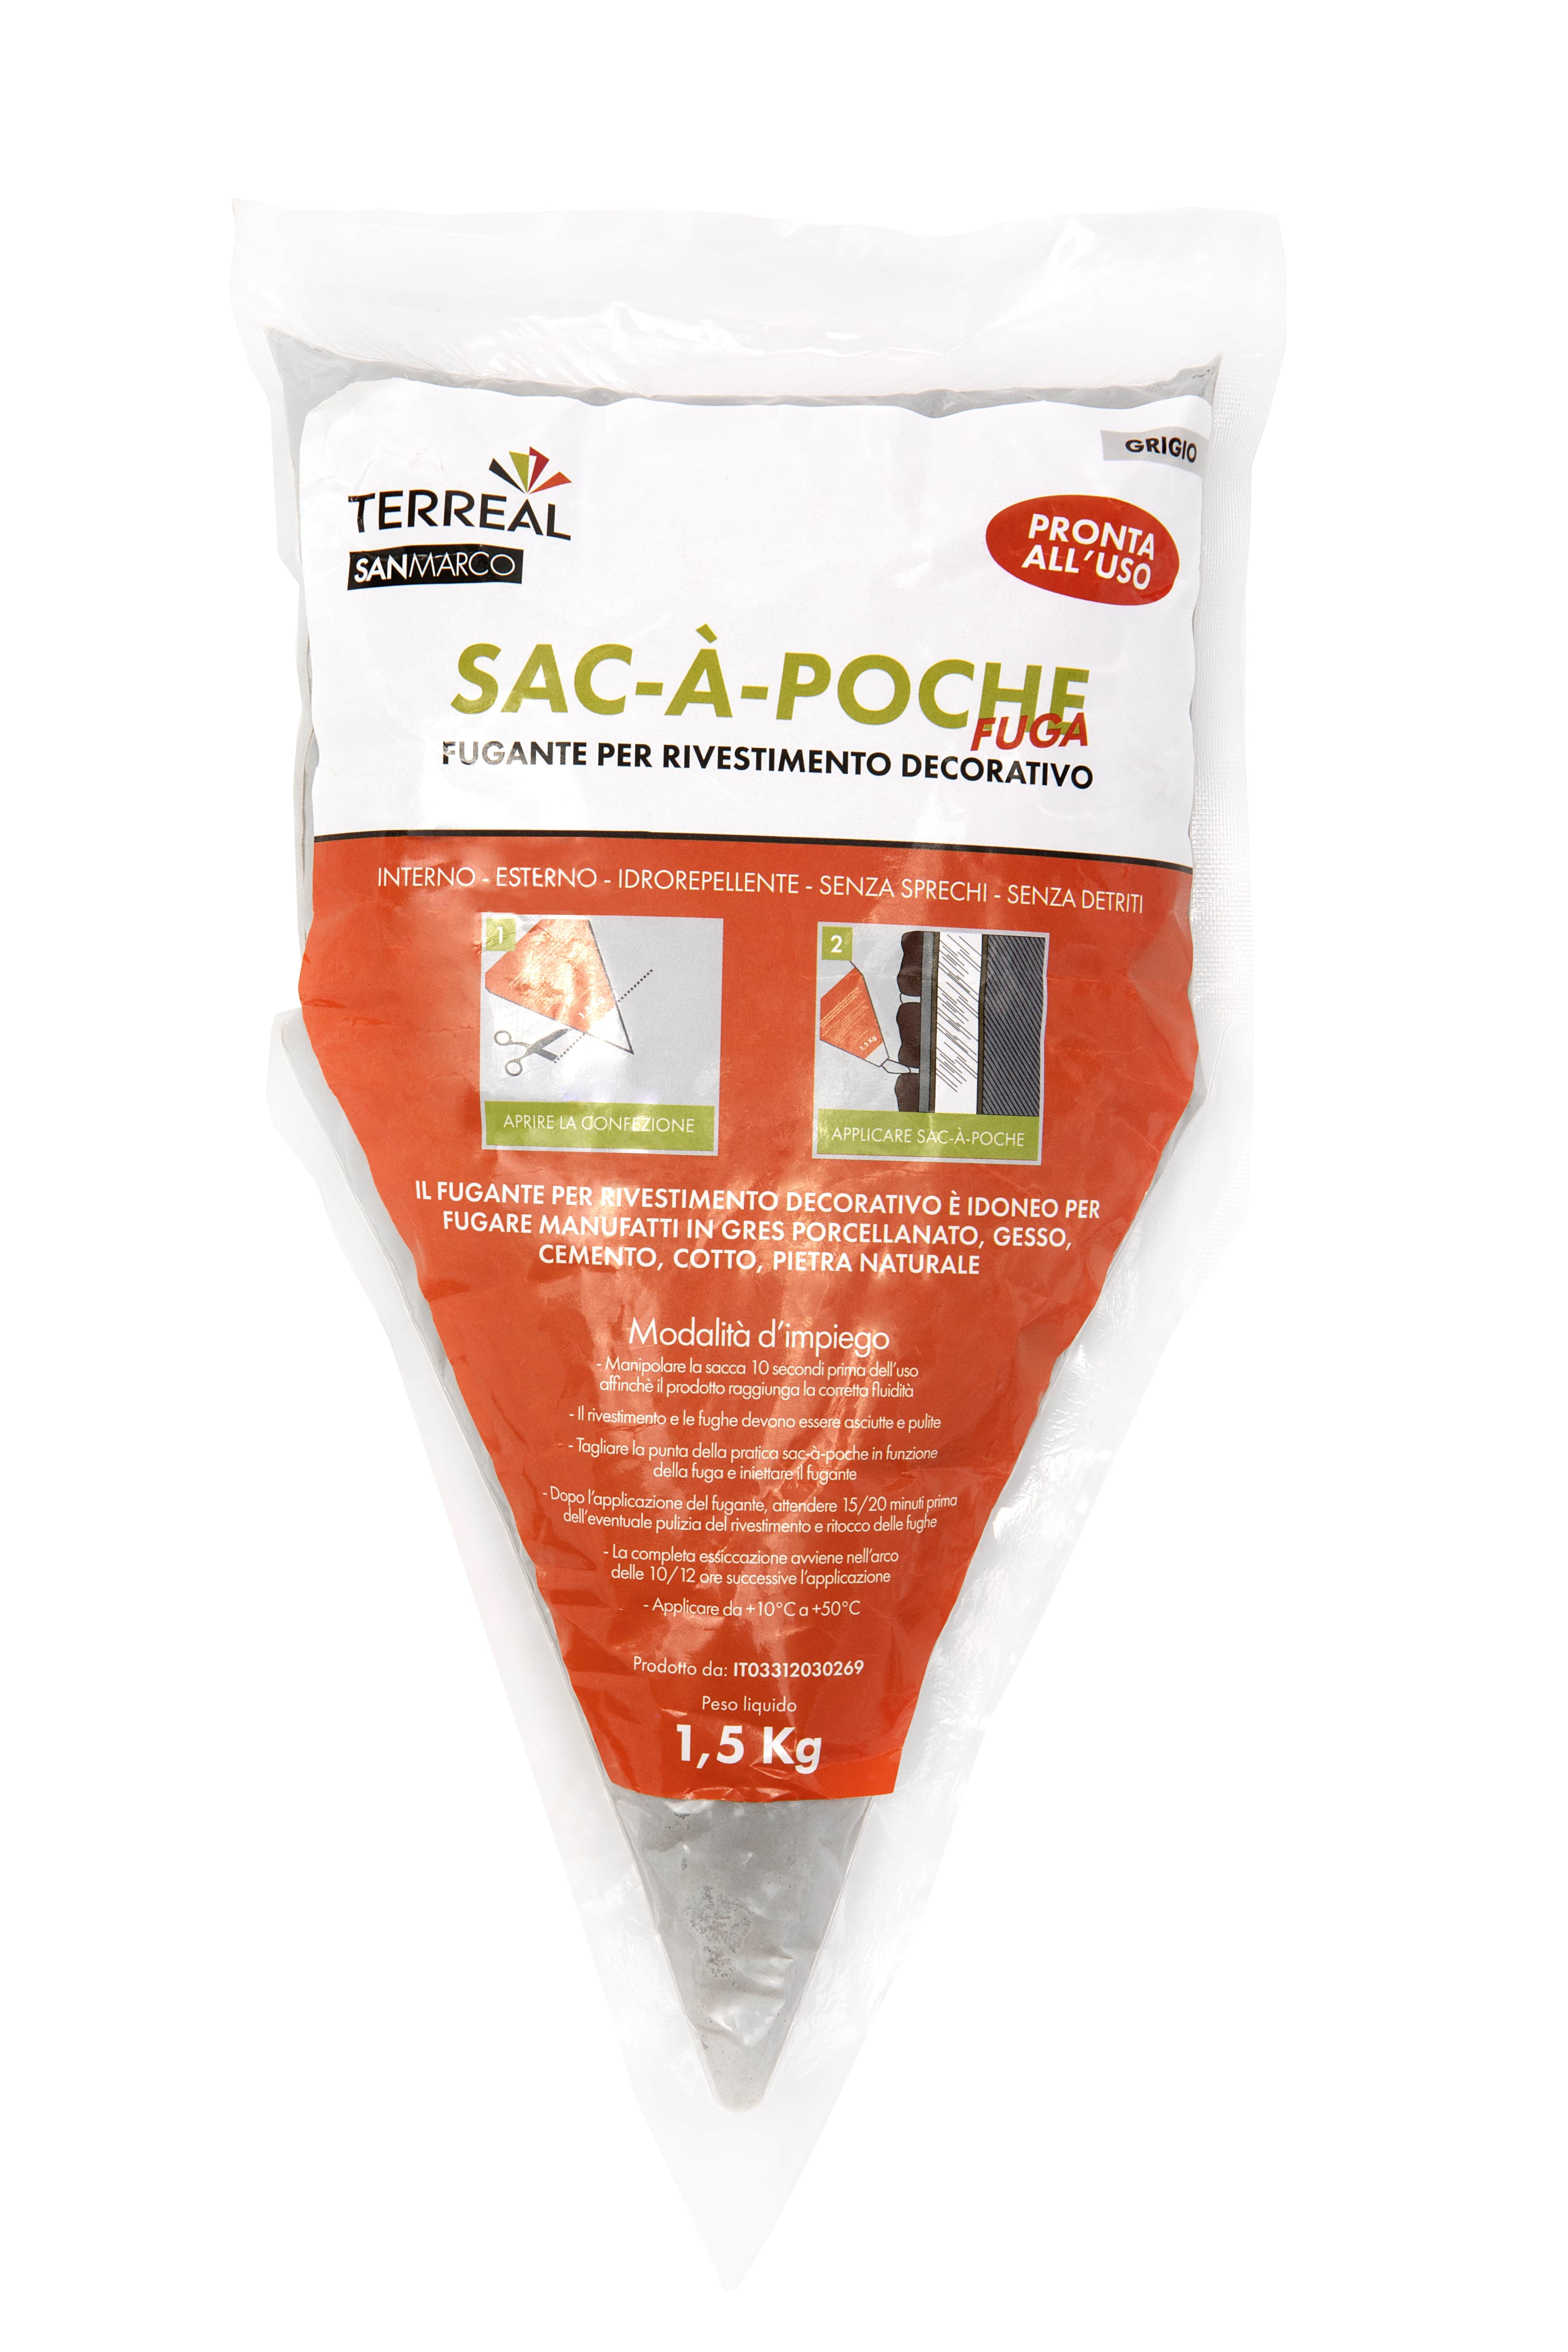 SAC-A-POCHE fugante in sacchetto adatto per listelli di rivestimento DECOR  vendita, prezzo